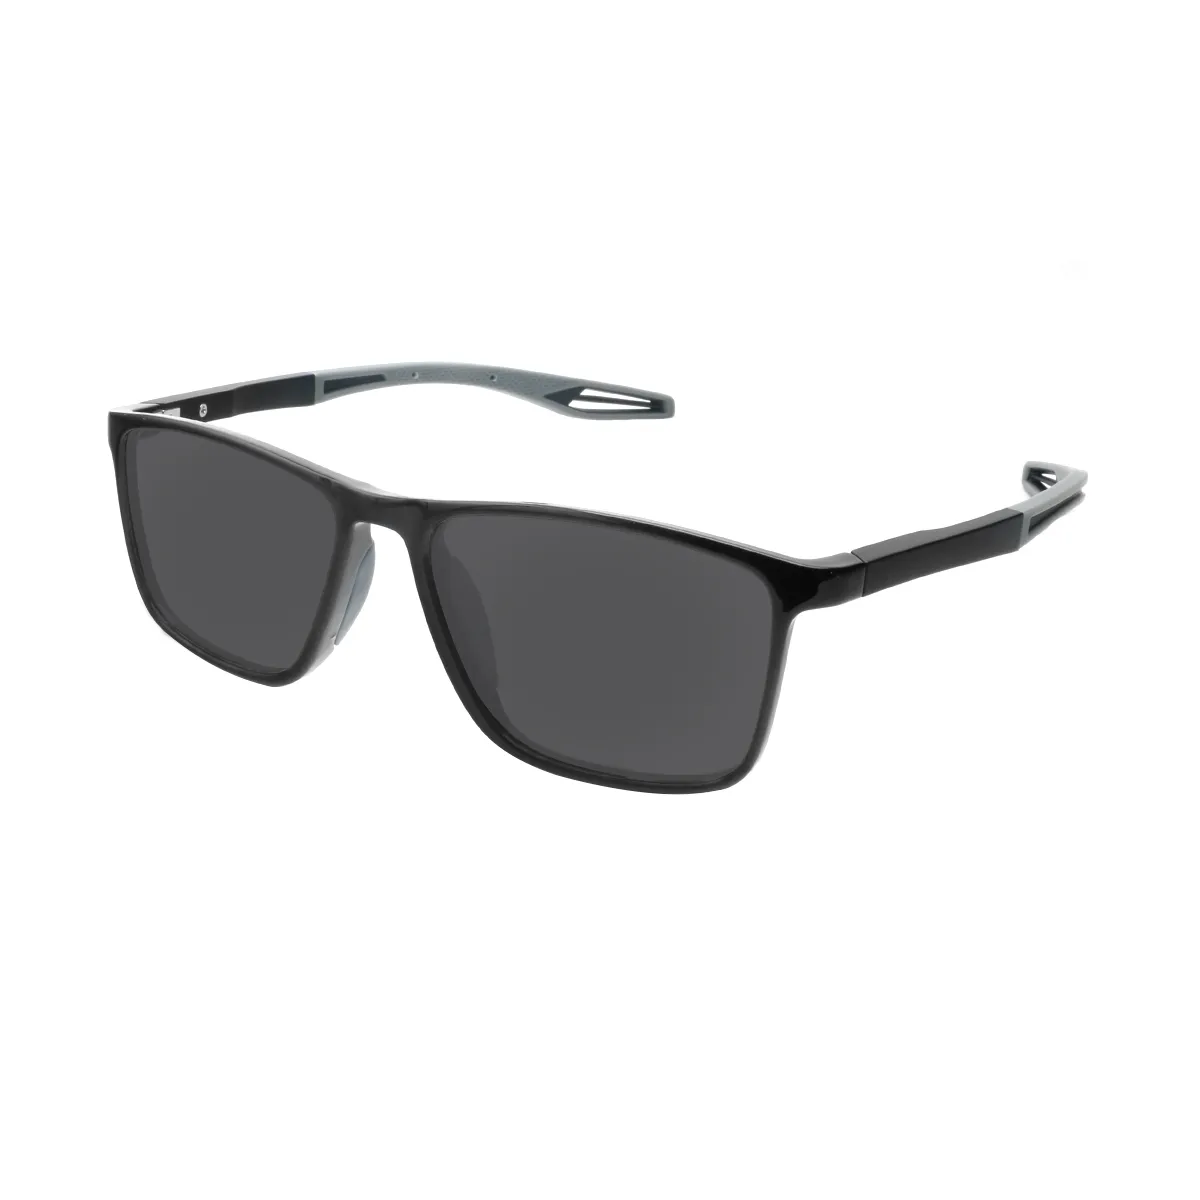 Hopkins - Rectangle Black Sunglasses for Men & Women